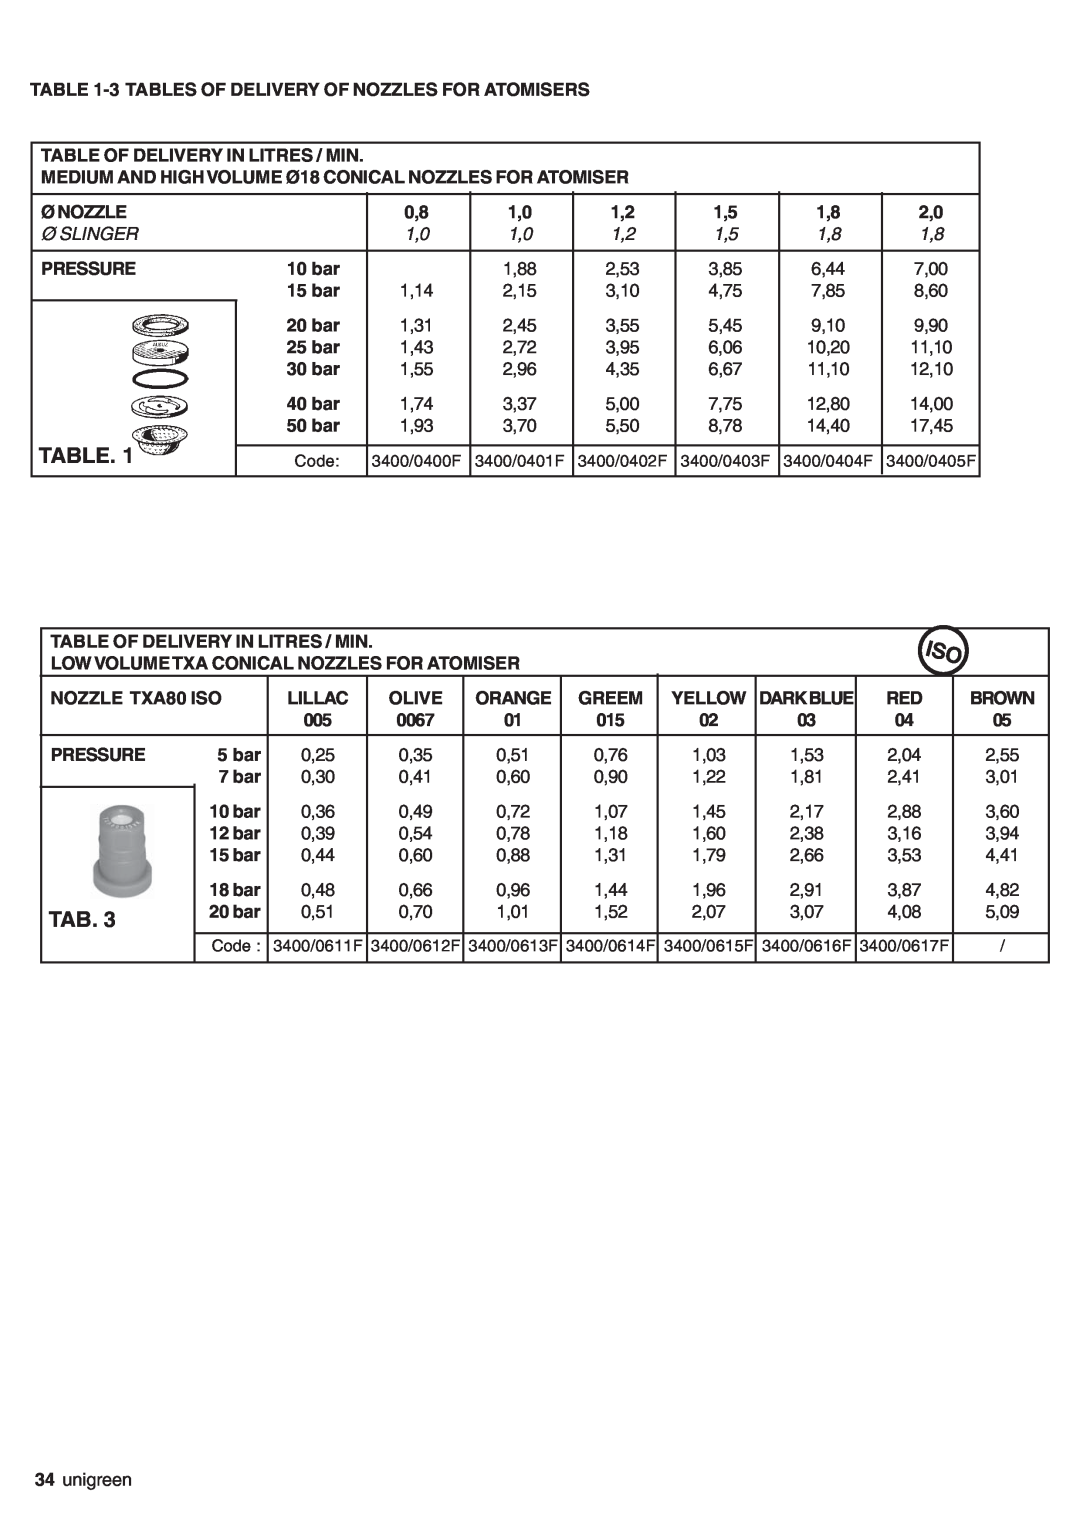 Unigreen AP APC Table Of Delivery In Litres / Min, Ø Nozzle, Pressure, 10 bar, 15 bar, 20 bar, 25 bar, 30 bar, 40 bar 